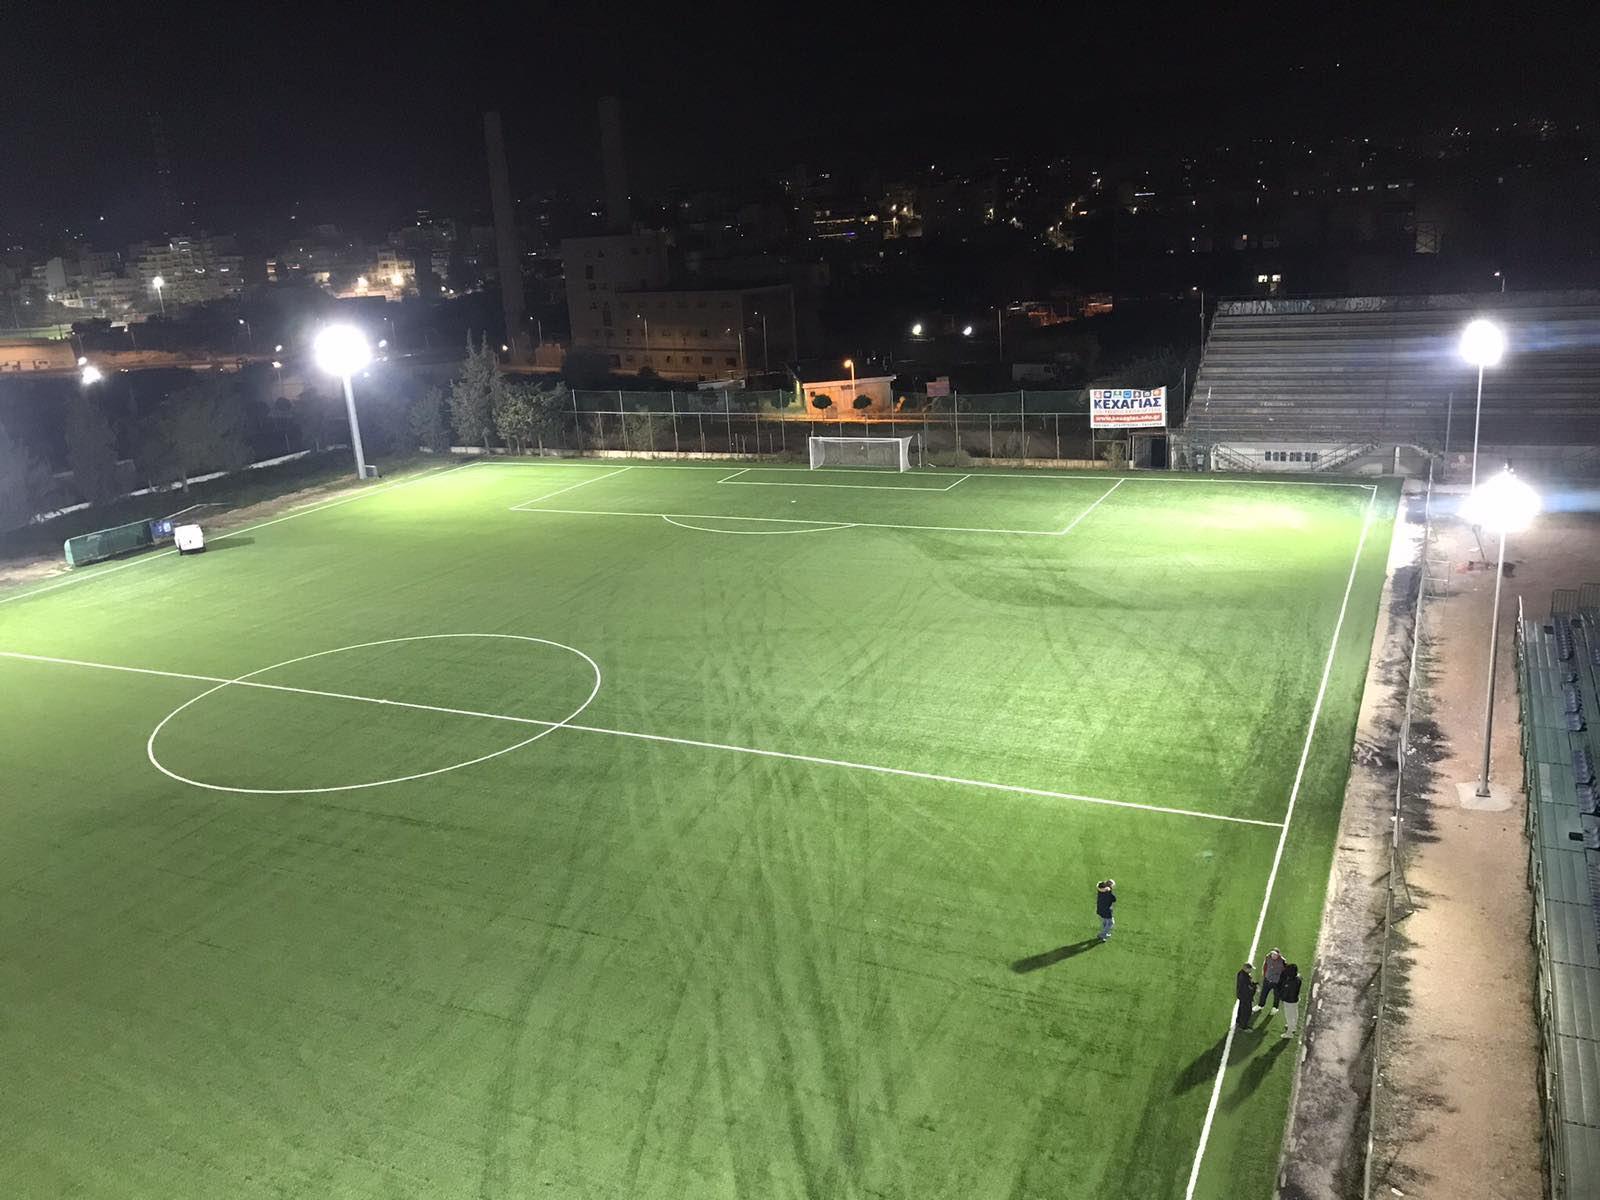 Ολοκληρώθηκαν οι παρεμβάσεις στο γήπεδο Ι. Βάζος του Δήμου Κερατσινίου - Δραπετσώνας